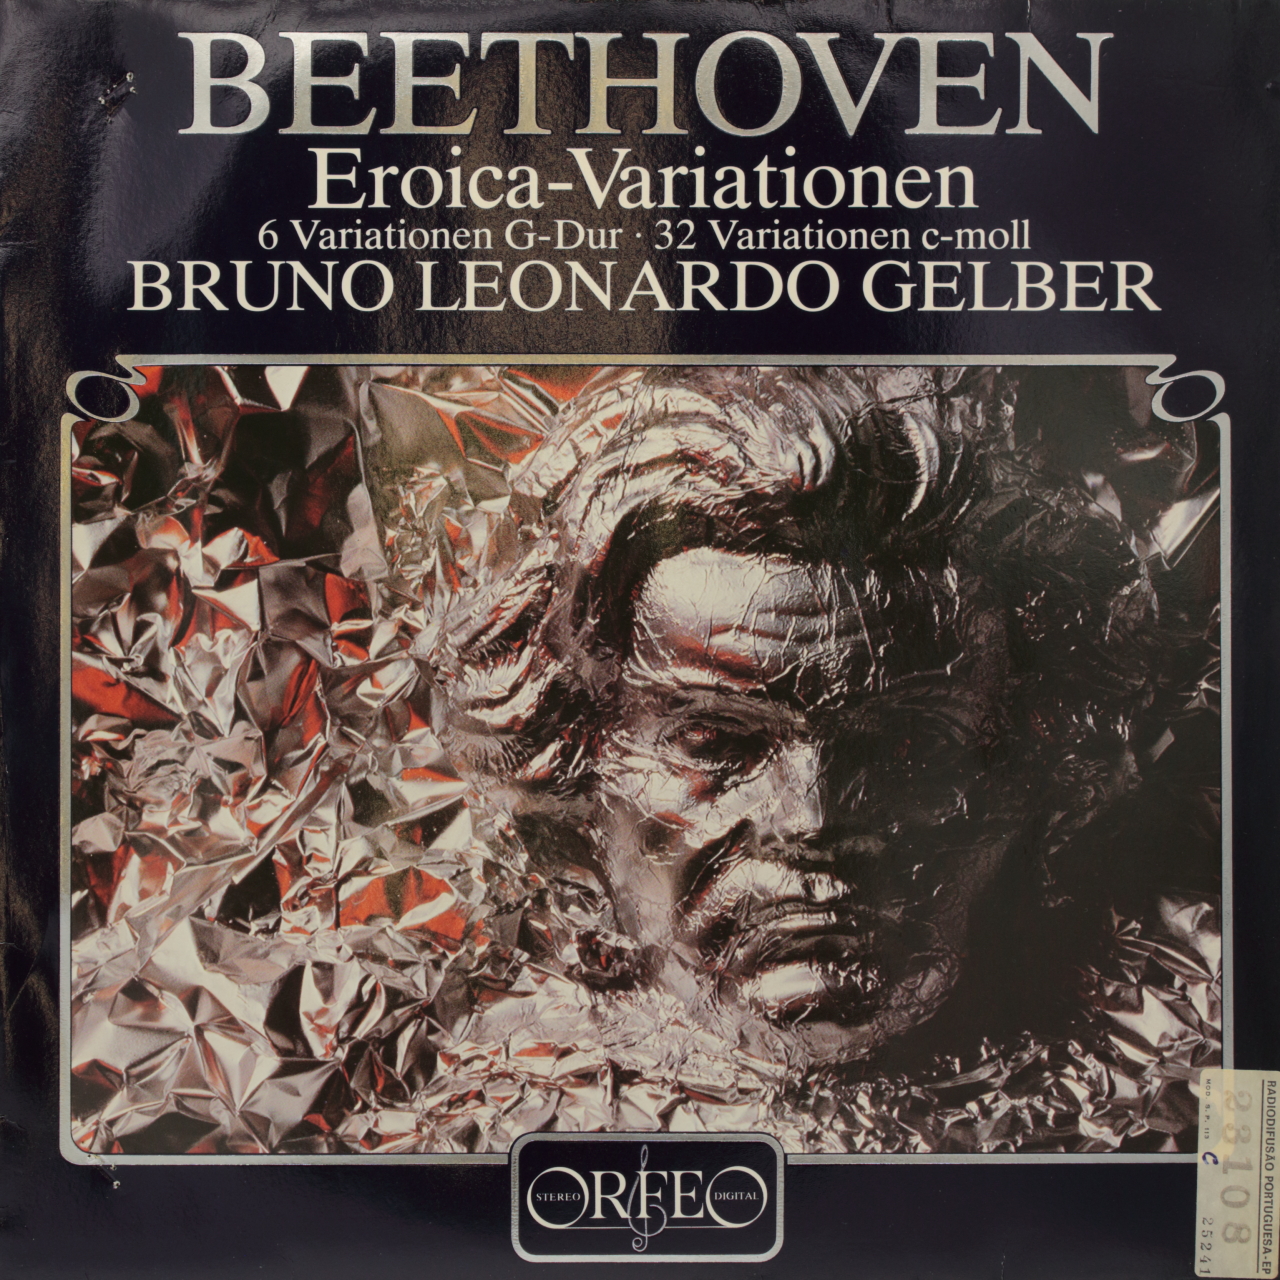 Beethoven: Eroica-Variationen; 6 Variationen G-Dur; 32 Variationen c-moll